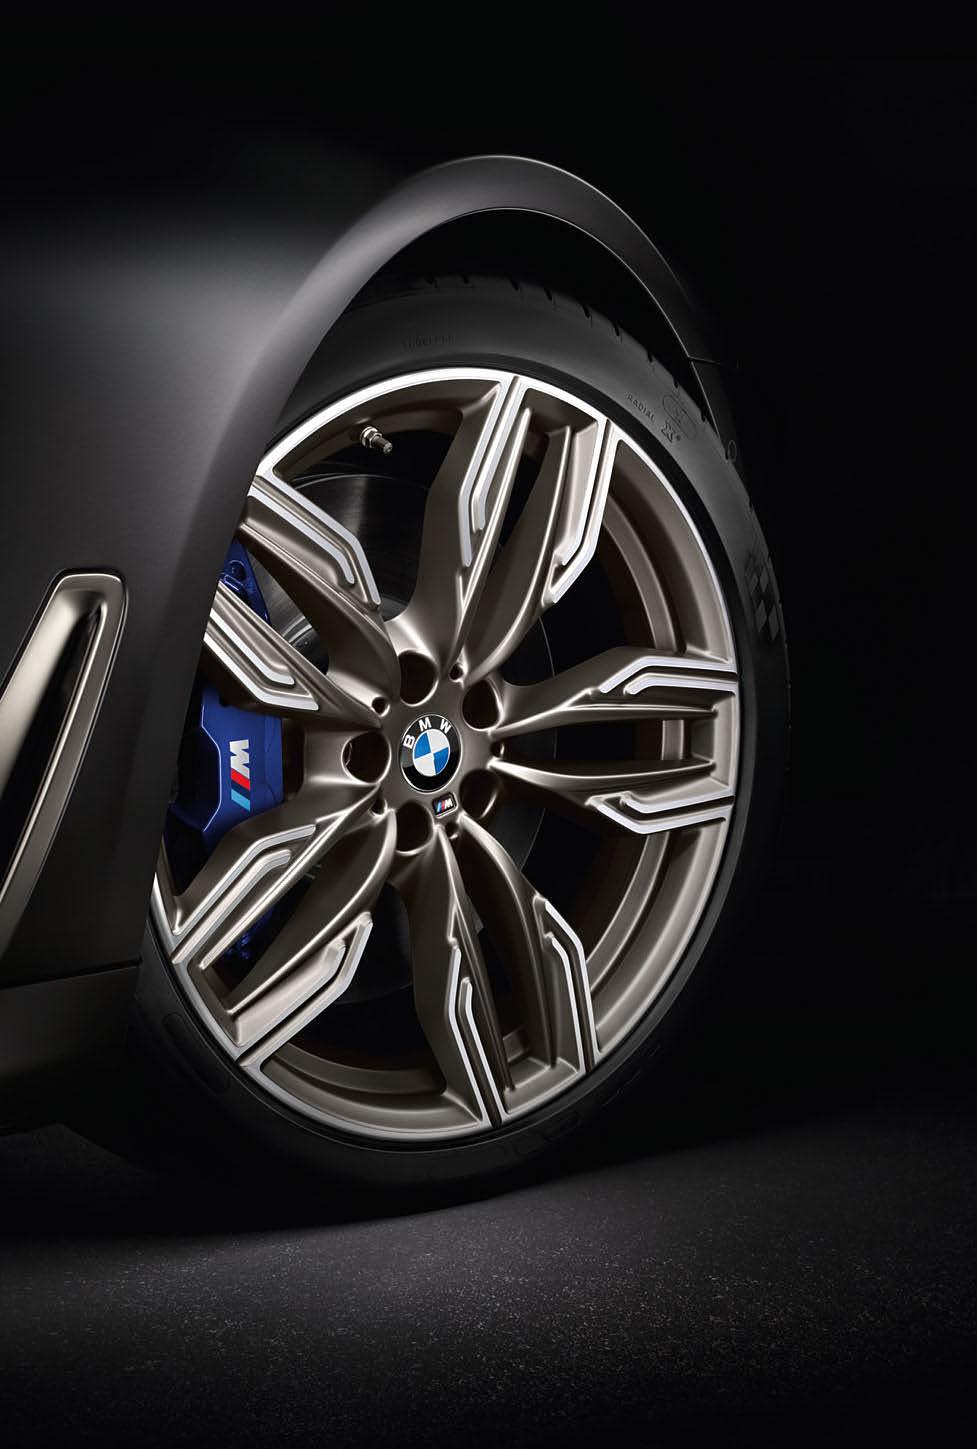 讓動力穩穩傳遞至路面 為了確保隨時發揮優異的煞車表現, M Performance automobiles 搭載最頂尖的煞車系統, 還可搭載專屬 M 款跑車化煞車套件 此外, 配備 BMW xdrive 智慧型可變四輪傳動系統的